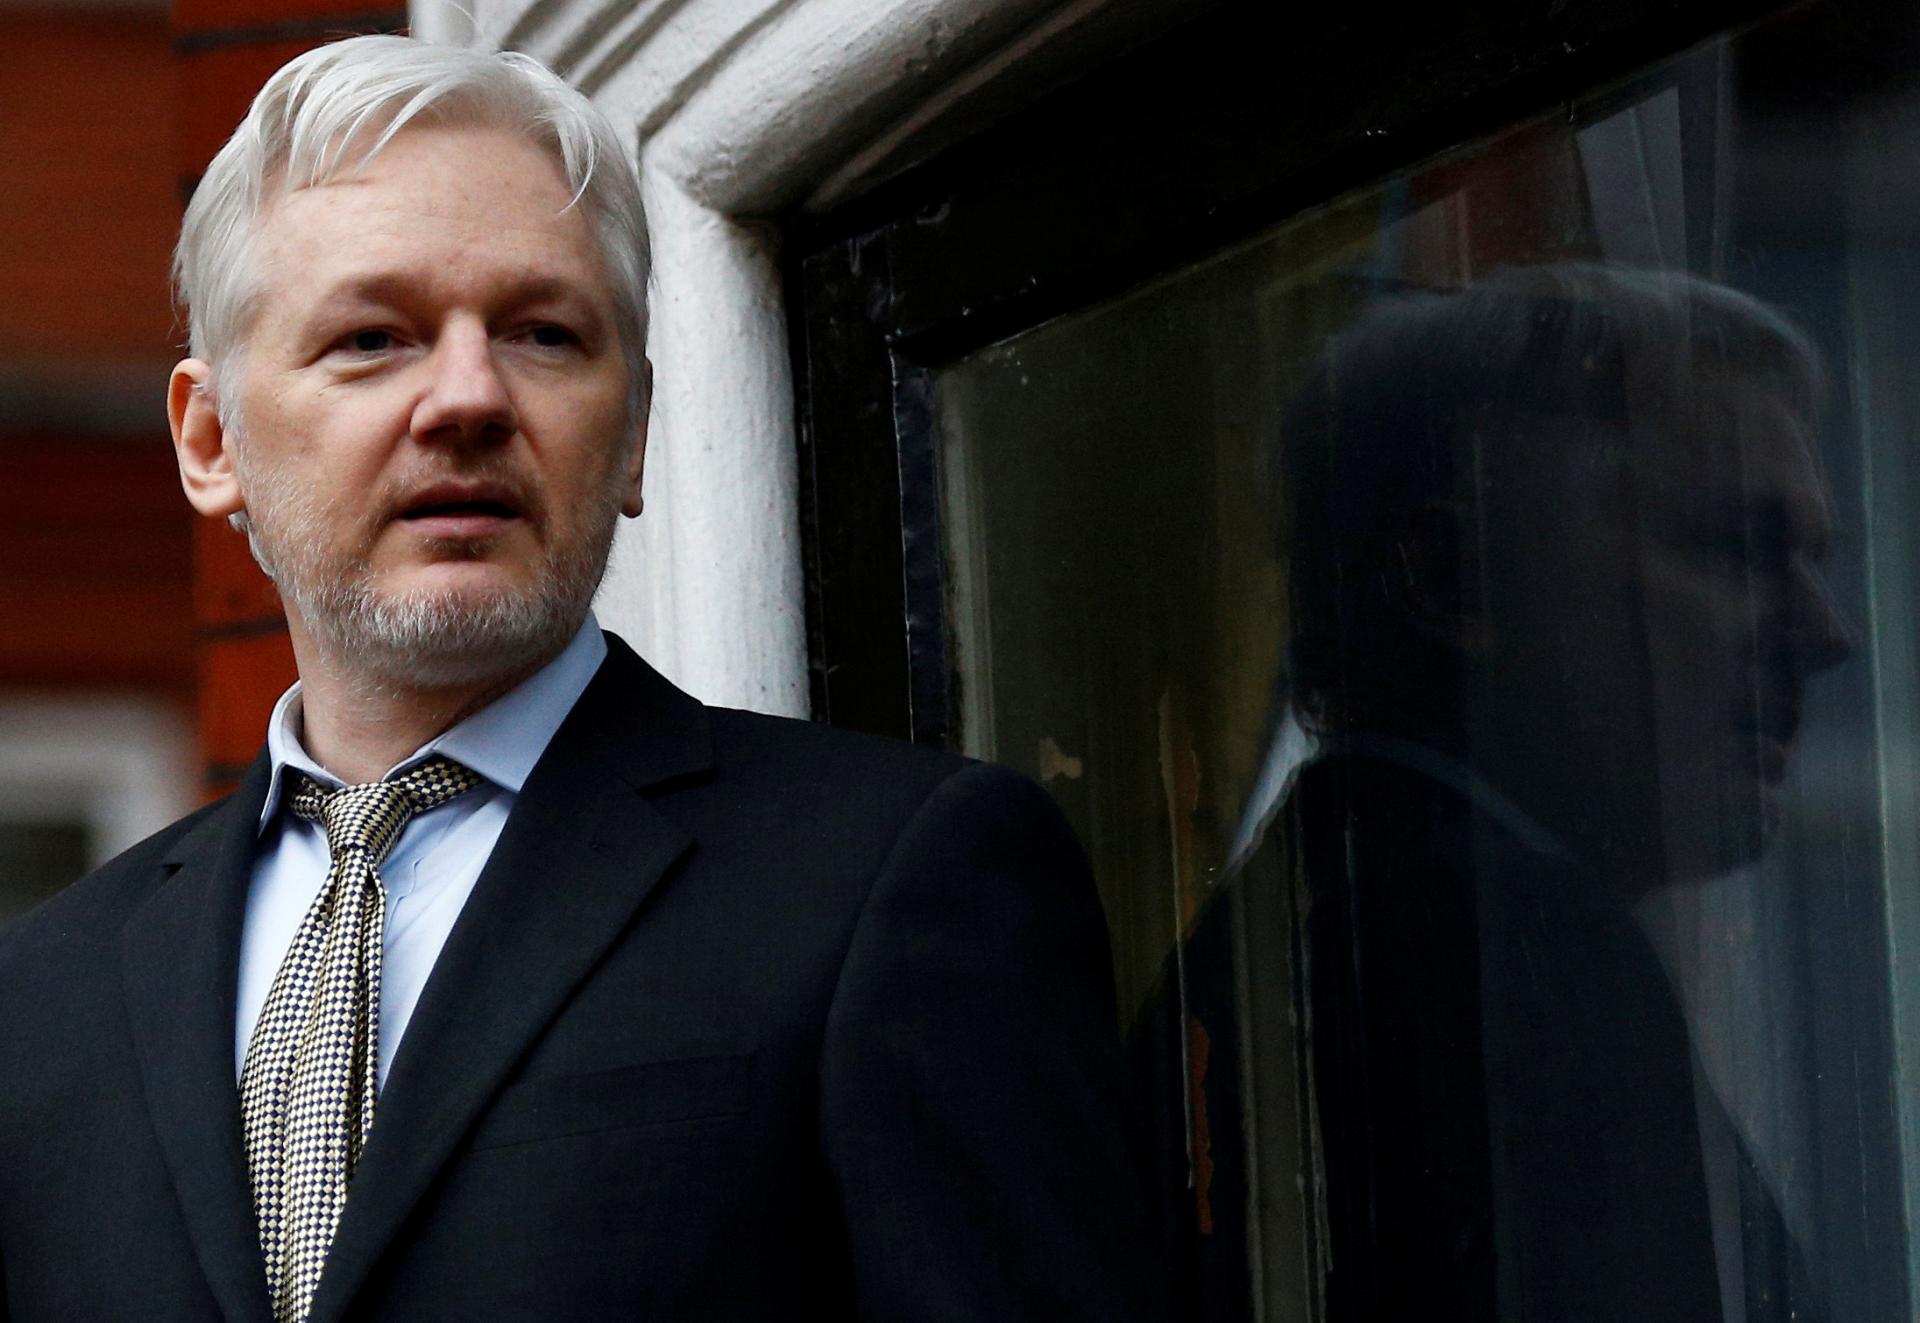 Zakladateľ WikiLeaks Assange bude voľný, vráti sa do Austrálie. Dohodol sa s úradmi v USA